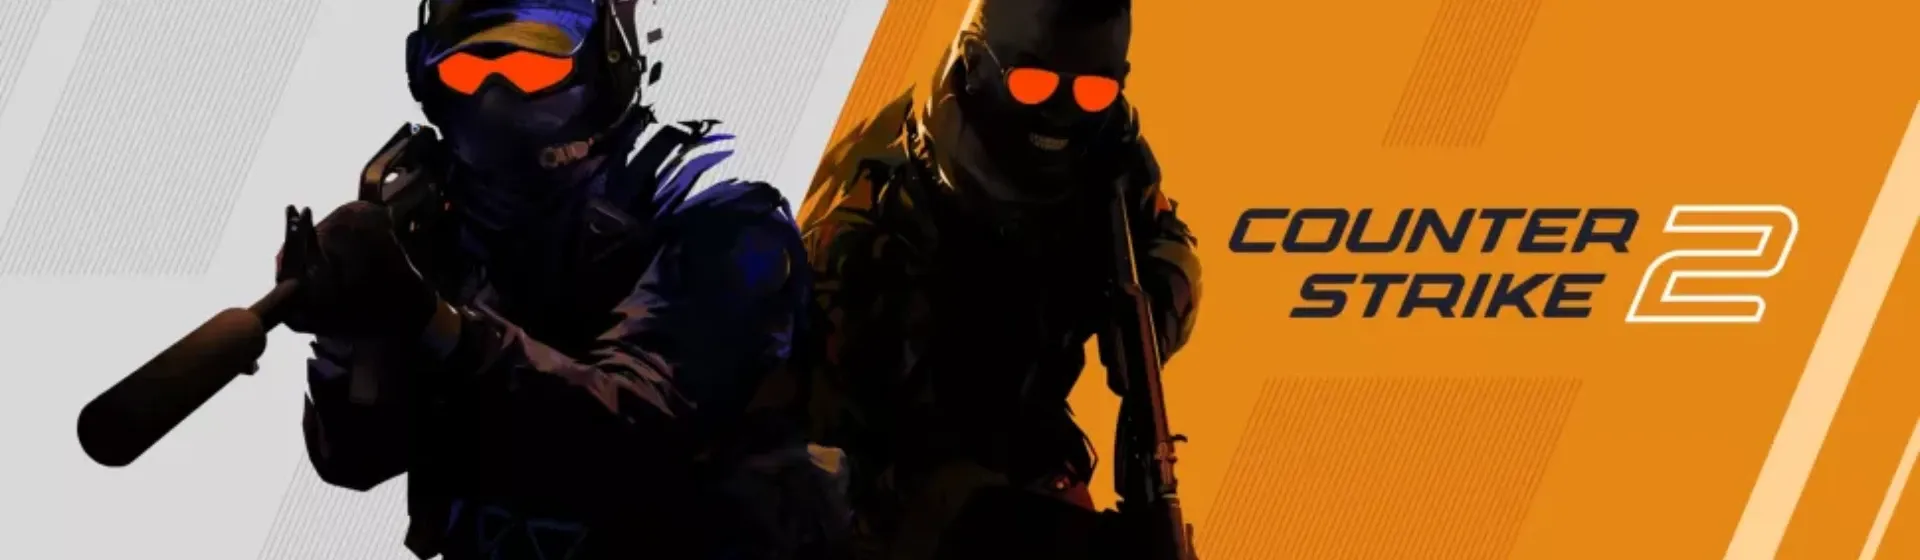 Capa do post: Counter Strike 2: tudo sobre o novo jogo da clássica franquia FPS